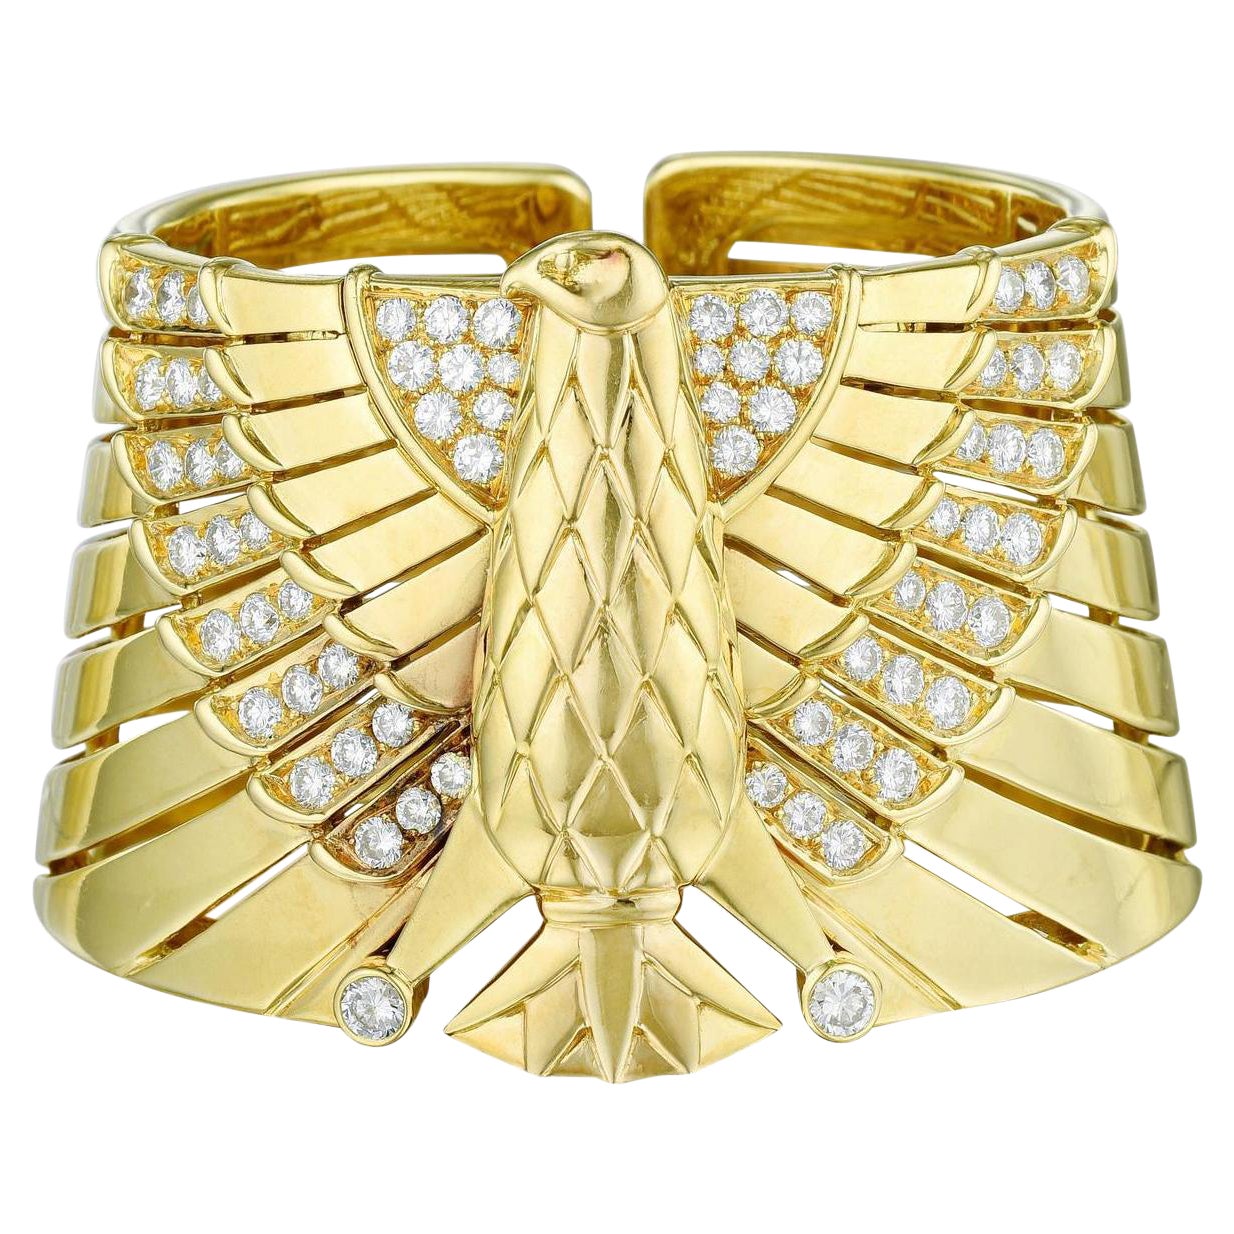 Cartier 18K Yellow Gold Egyptian Horus Falcon Bracelet